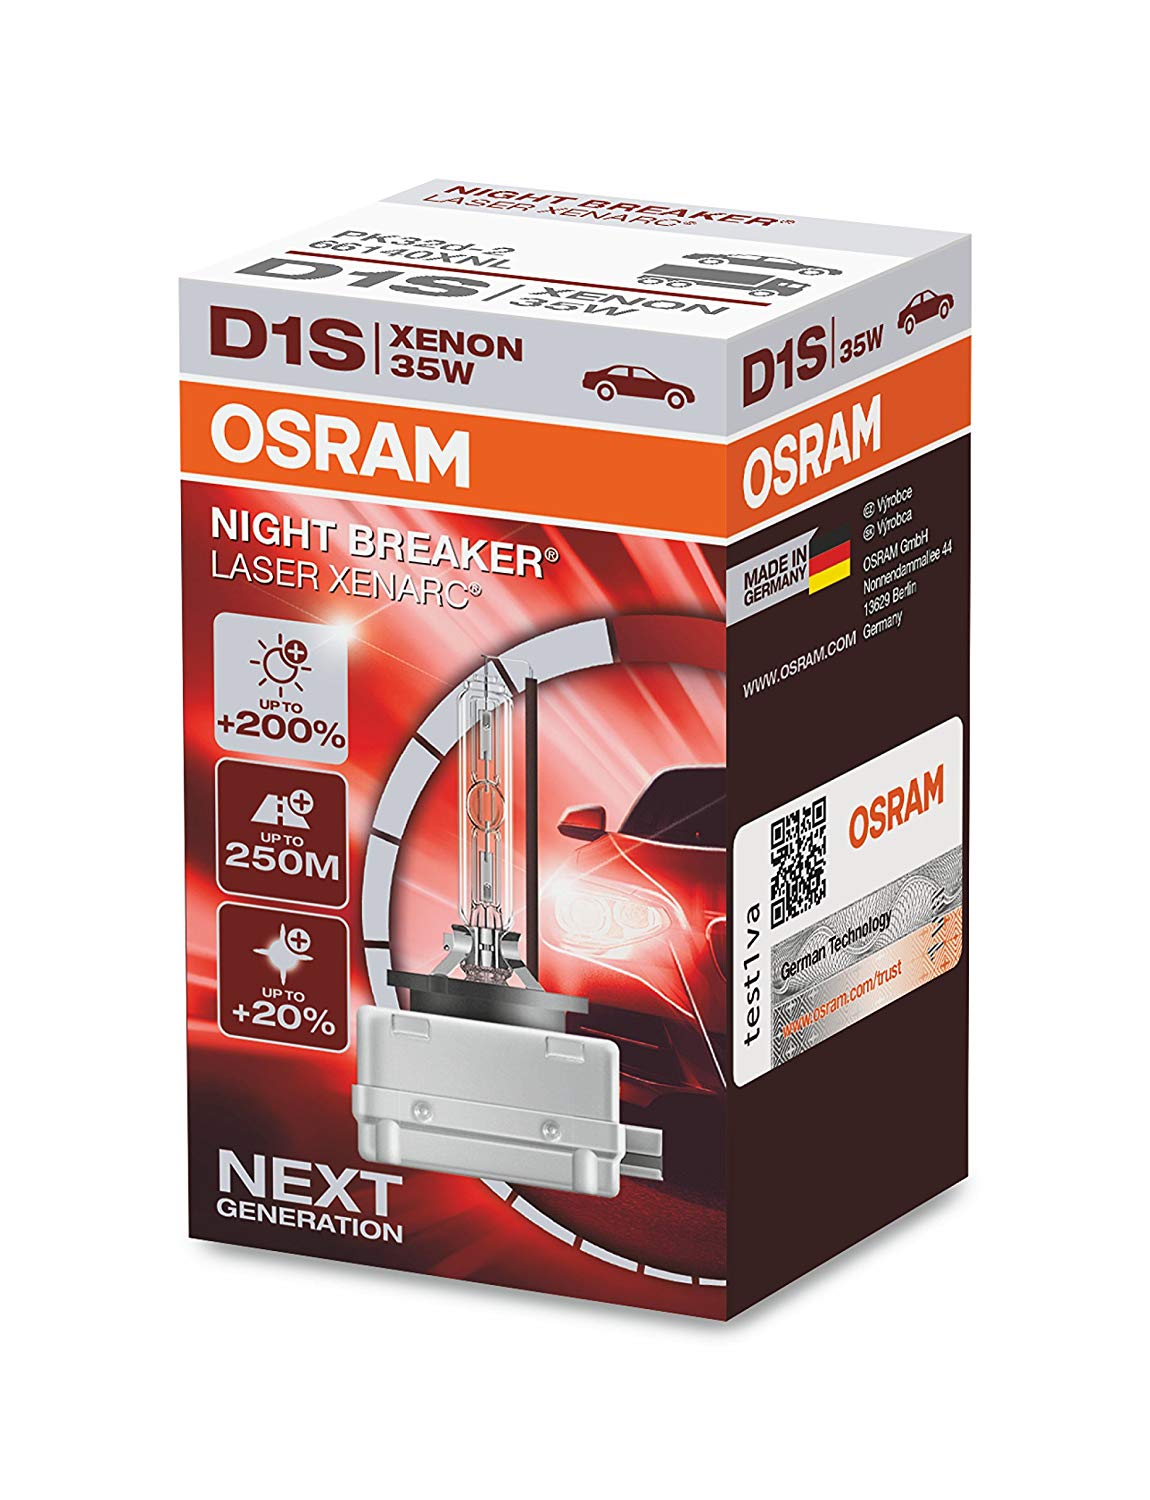 Osram D1S Night Breaker Laser Xenarc +200%